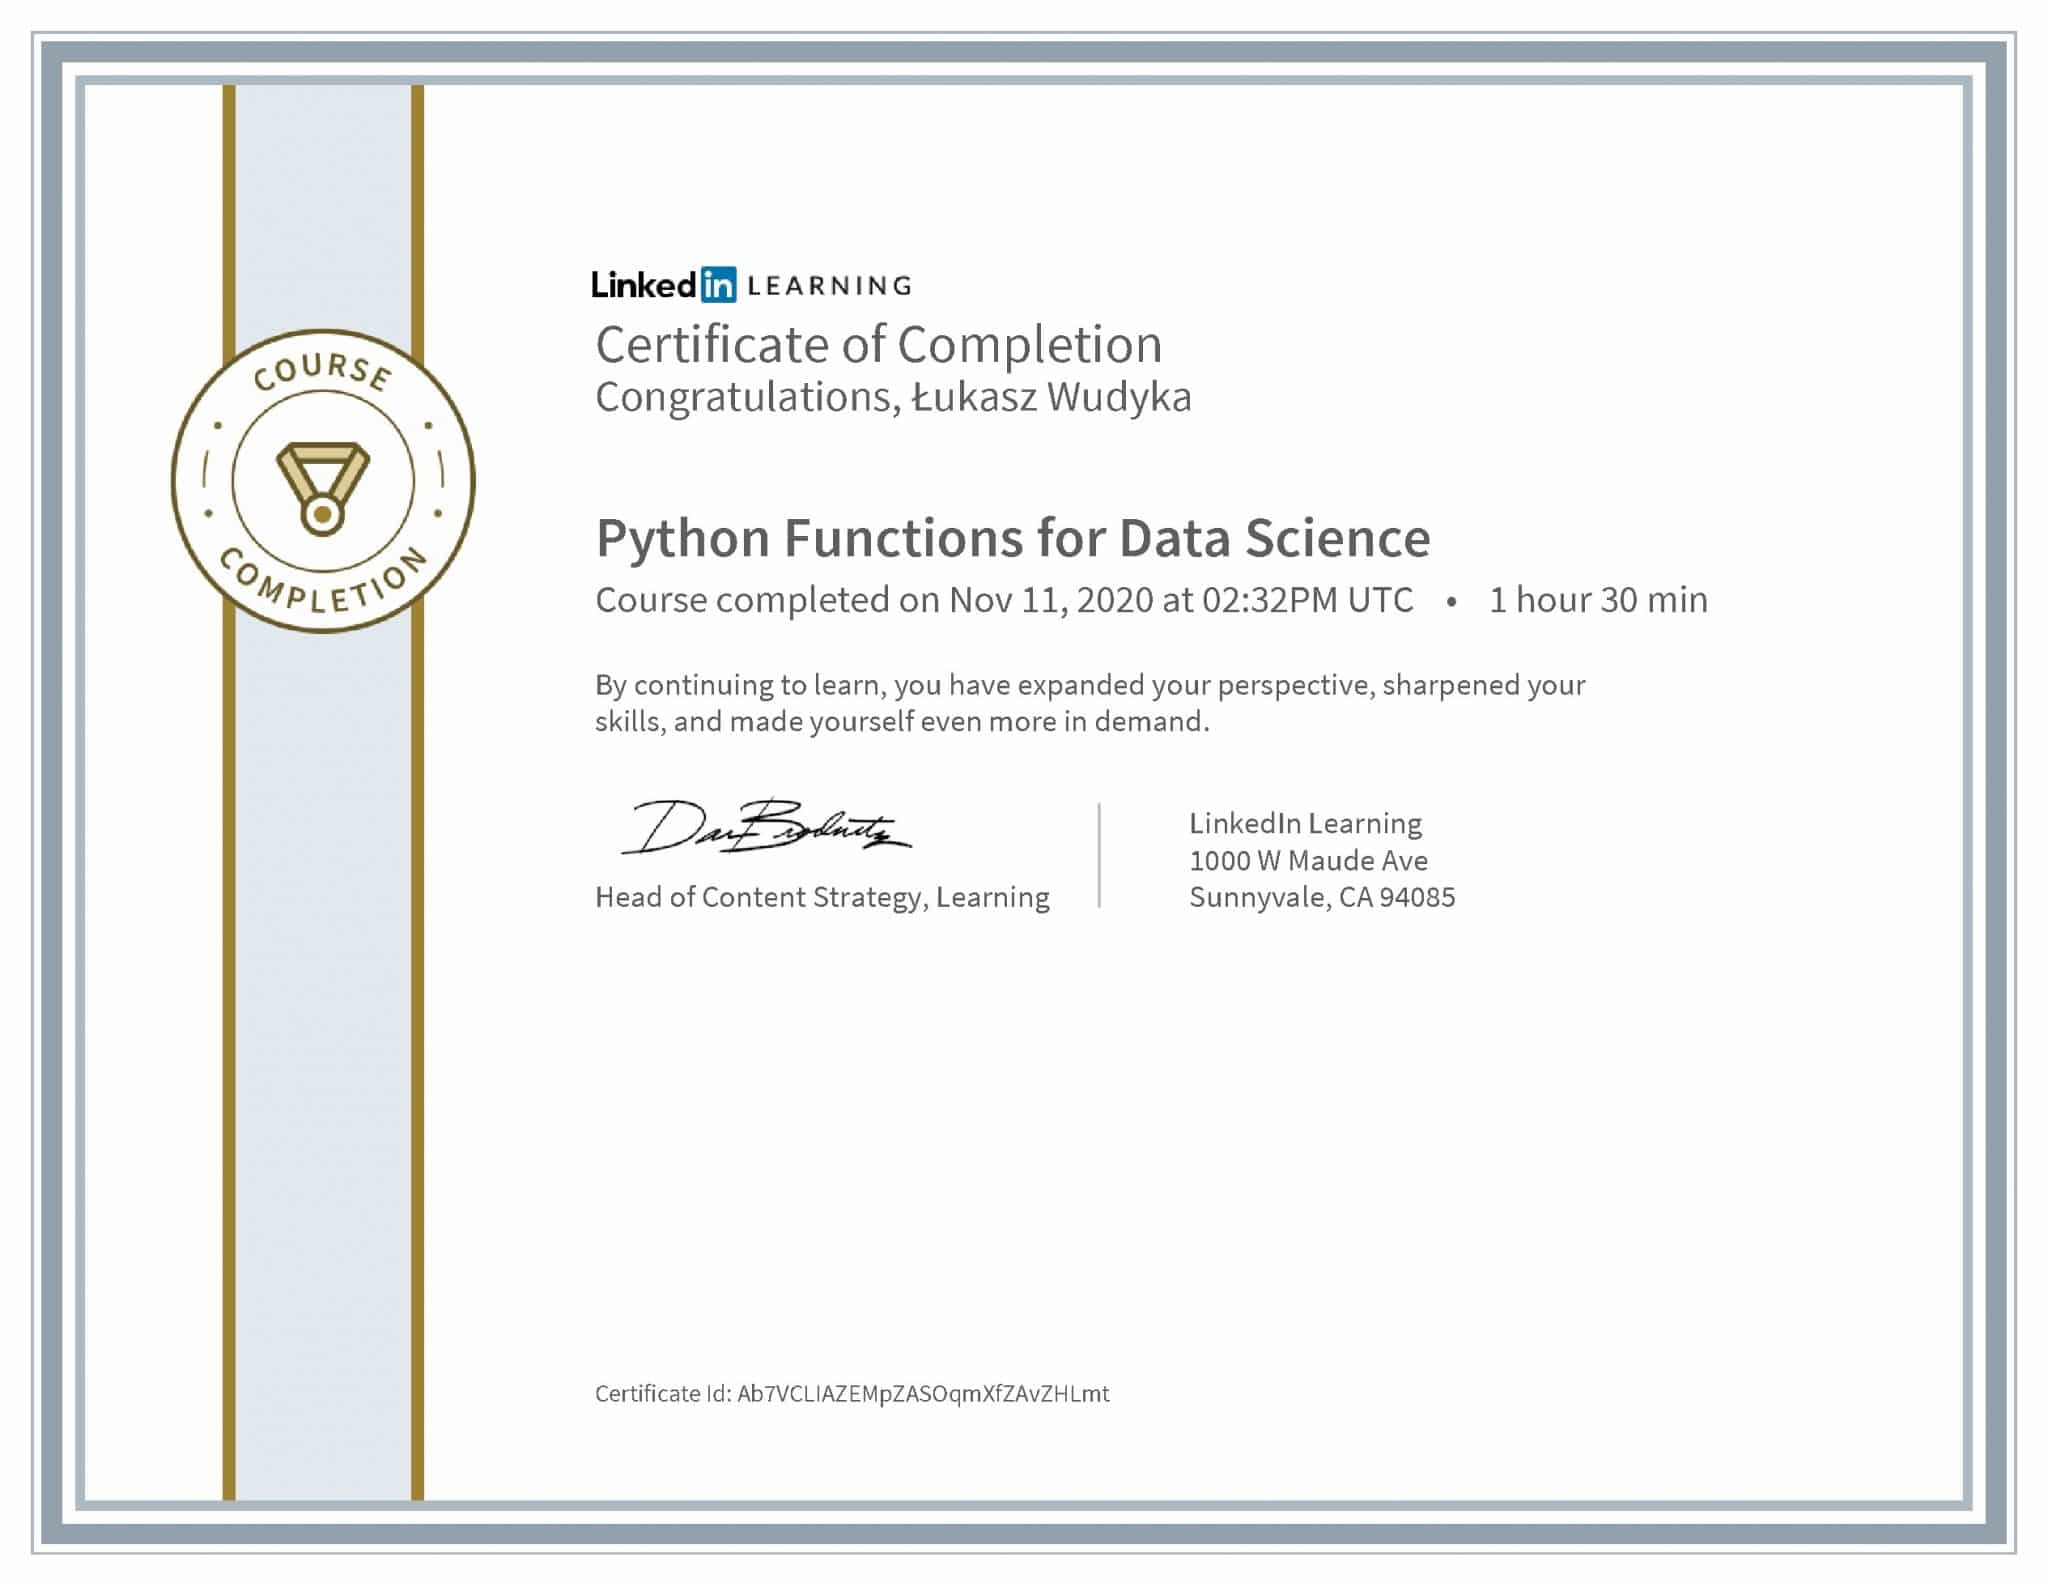 Łukasz Wudyka certyfikat LinkedIn Python Functions for Data Science